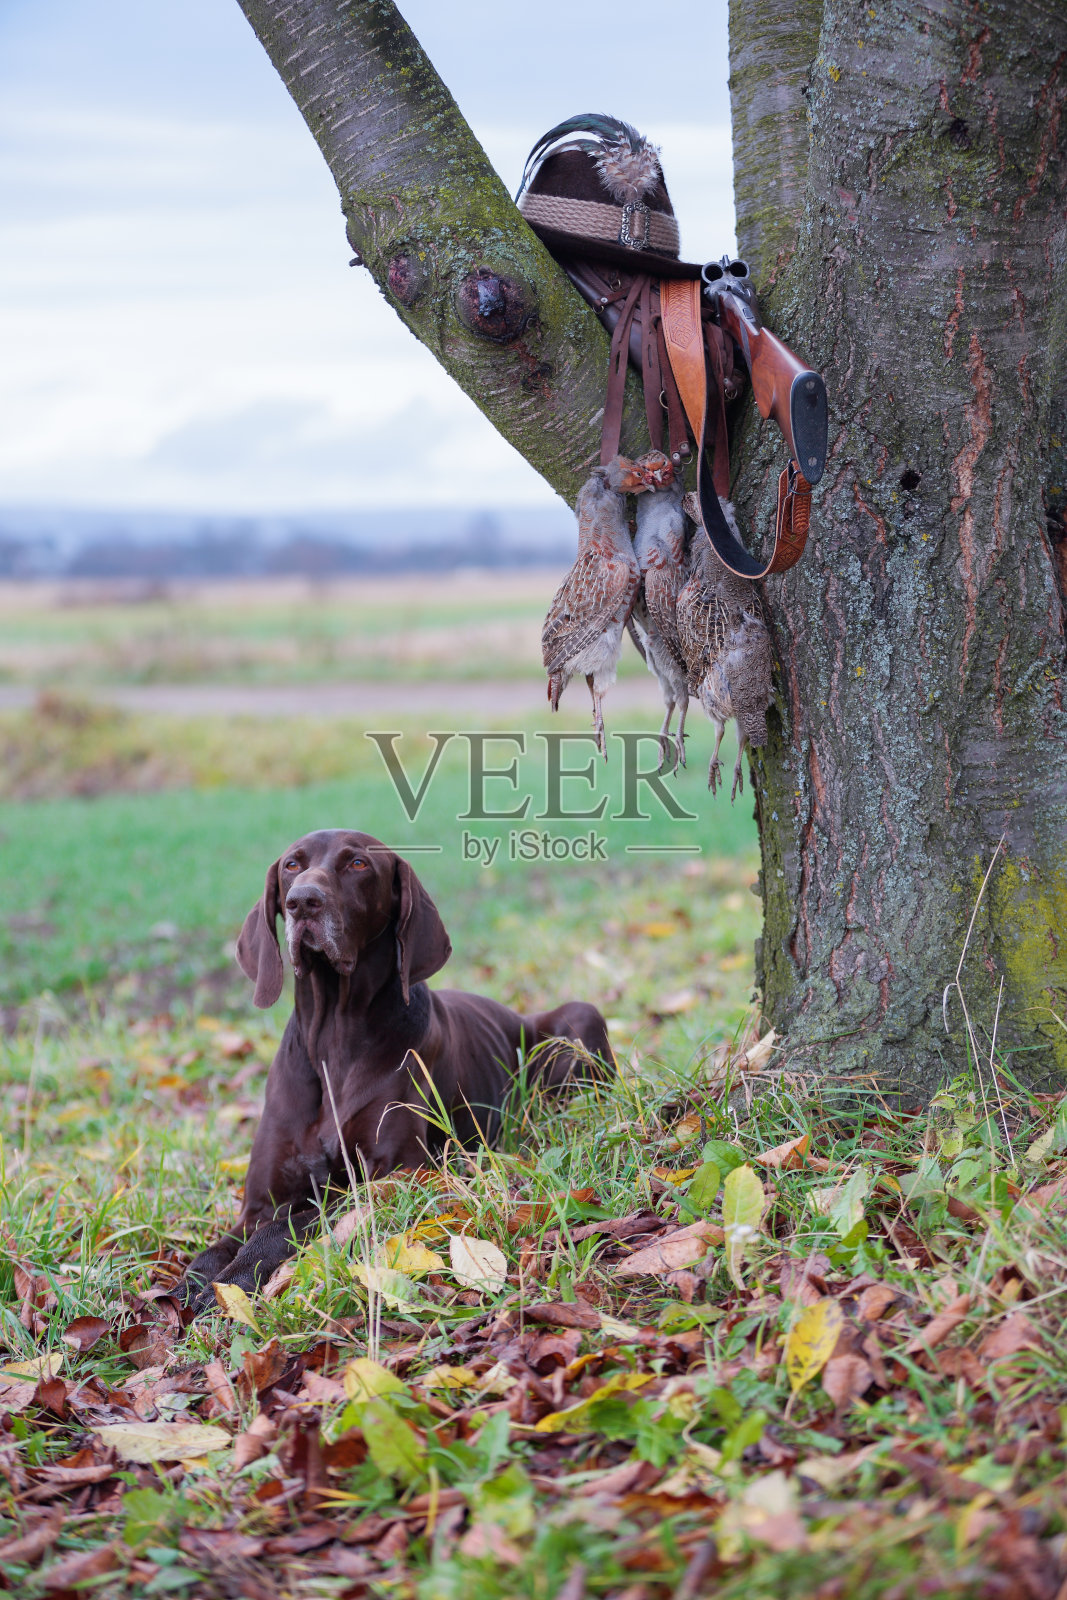 一只年幼的纯种狗躺在树旁的草坪上。树枝上挂着一件武器，帽子上插着一根羽毛，花边上挂着一只小羚羊。一个狩猎的场景。照片摄影图片